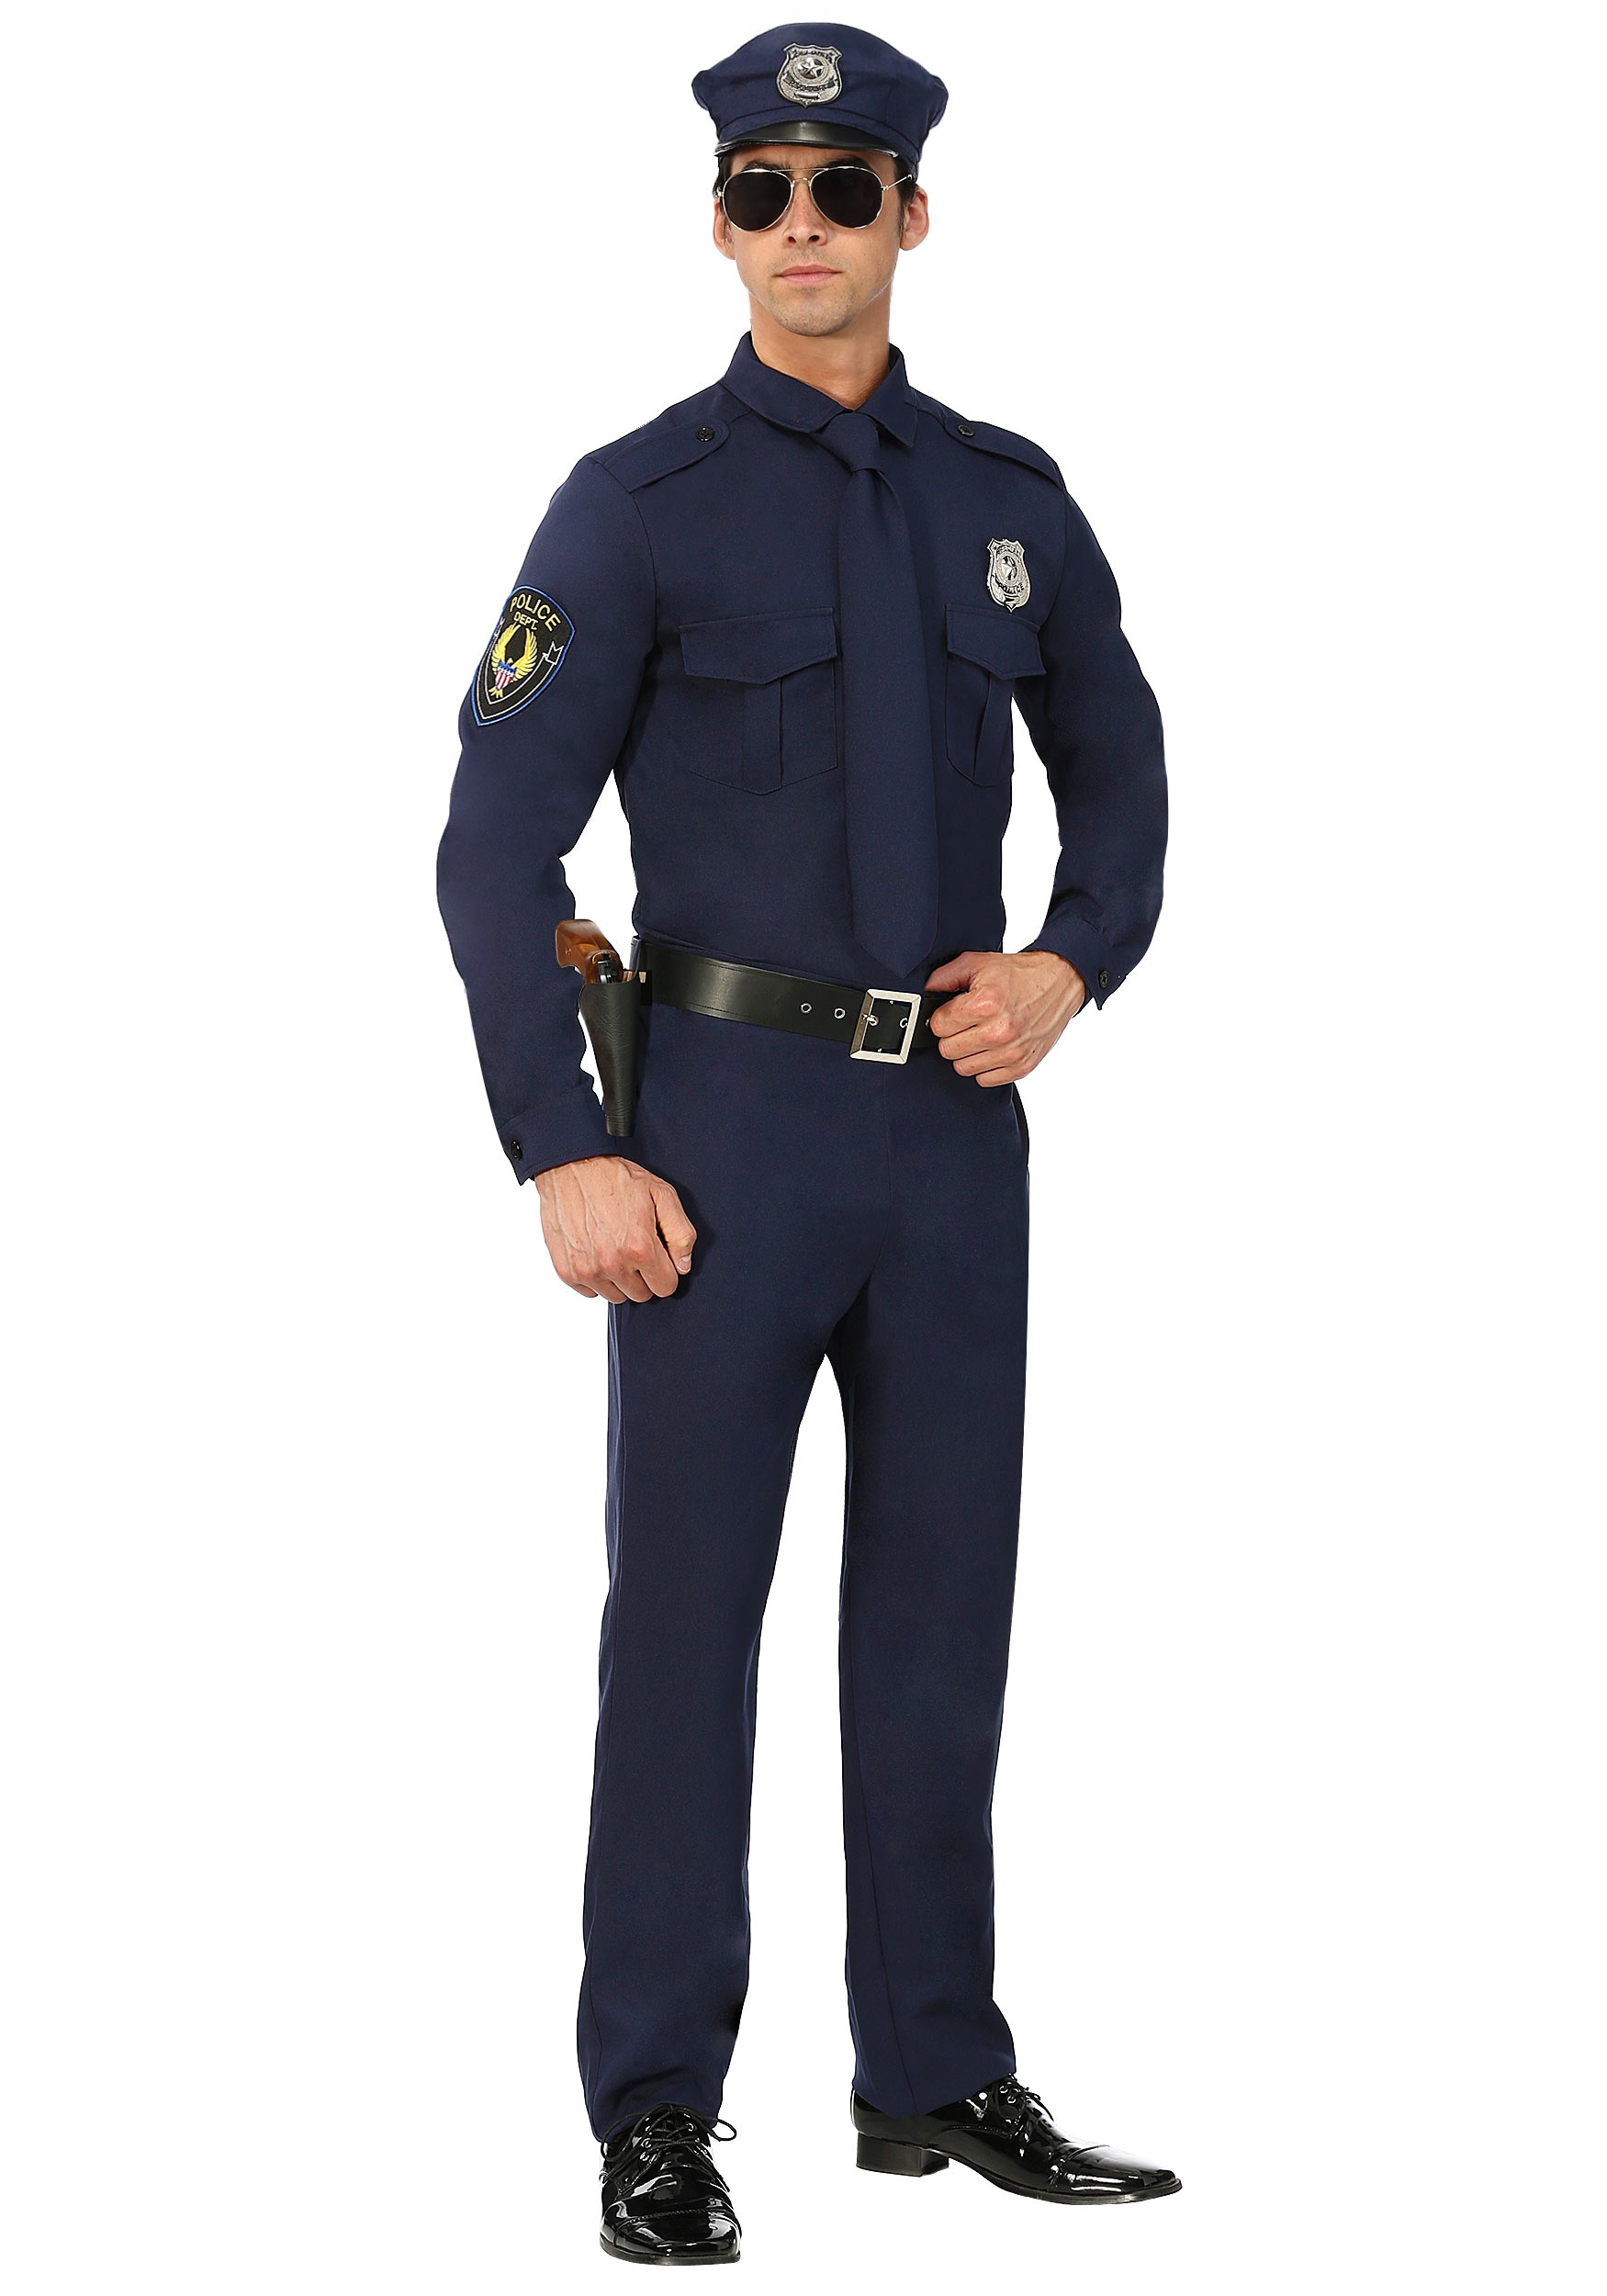 Plus Size Men’s Cop Costume